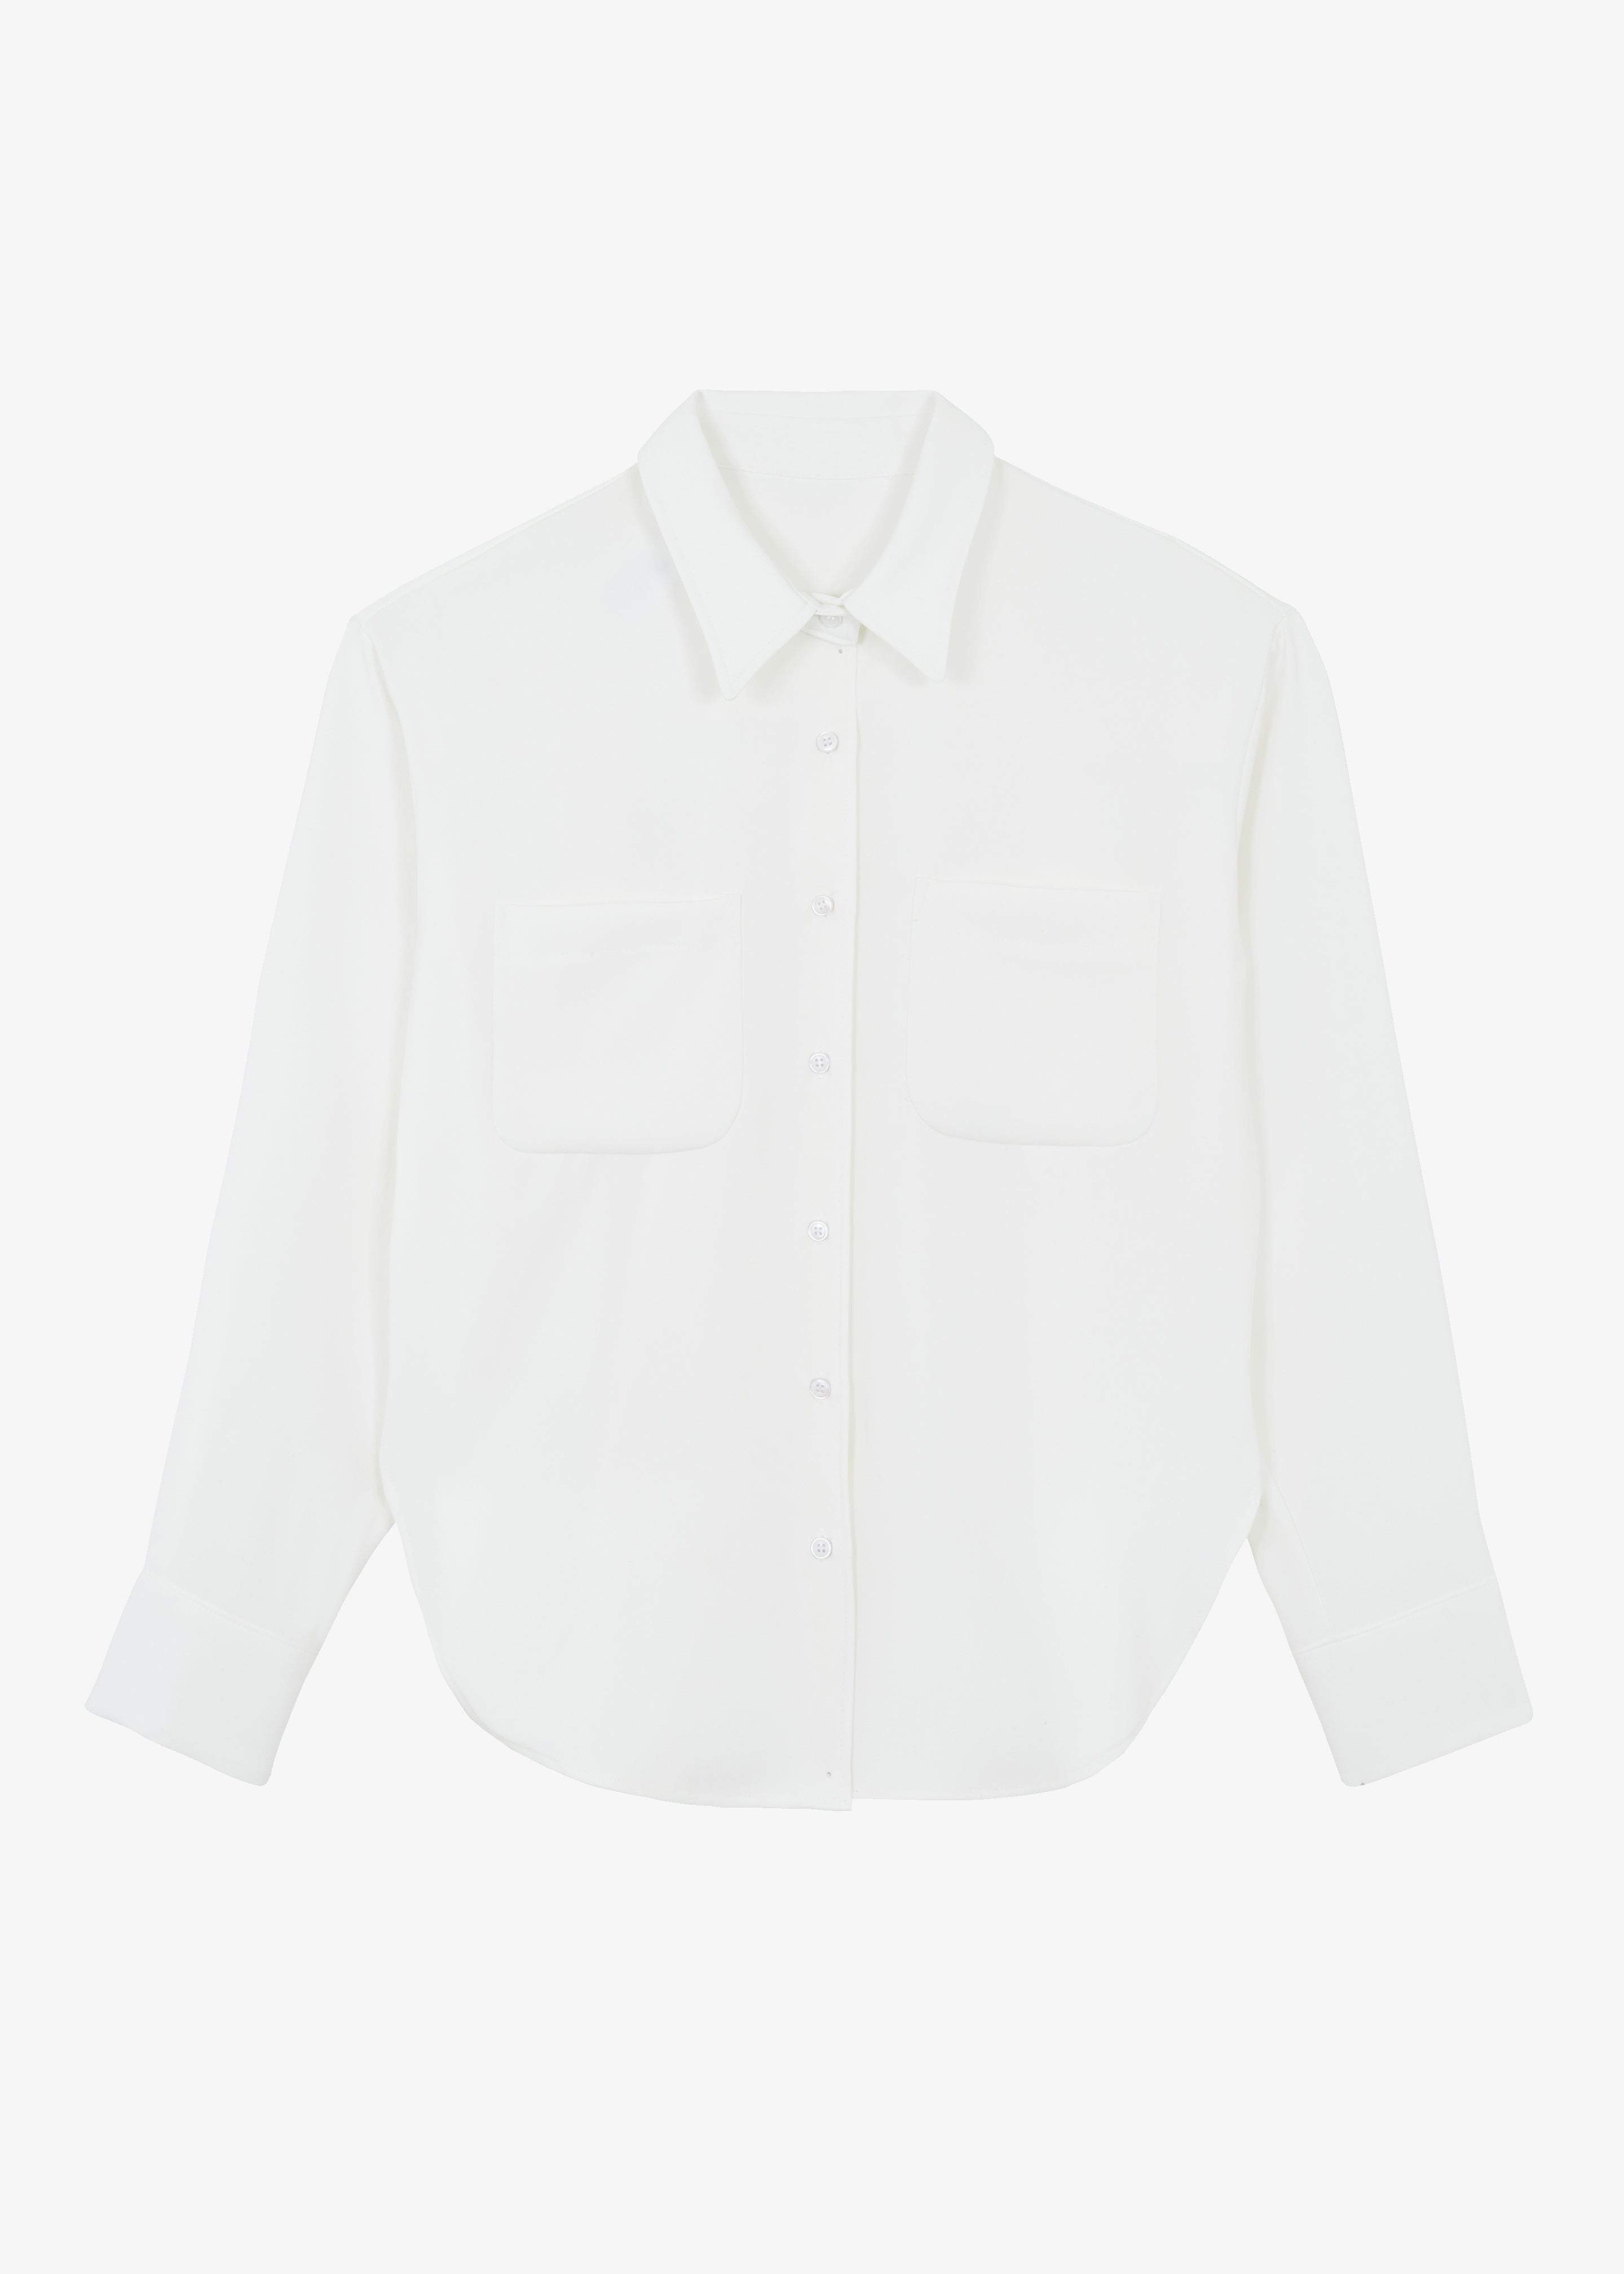 Macie Pocket Shirt - Ivory - 10